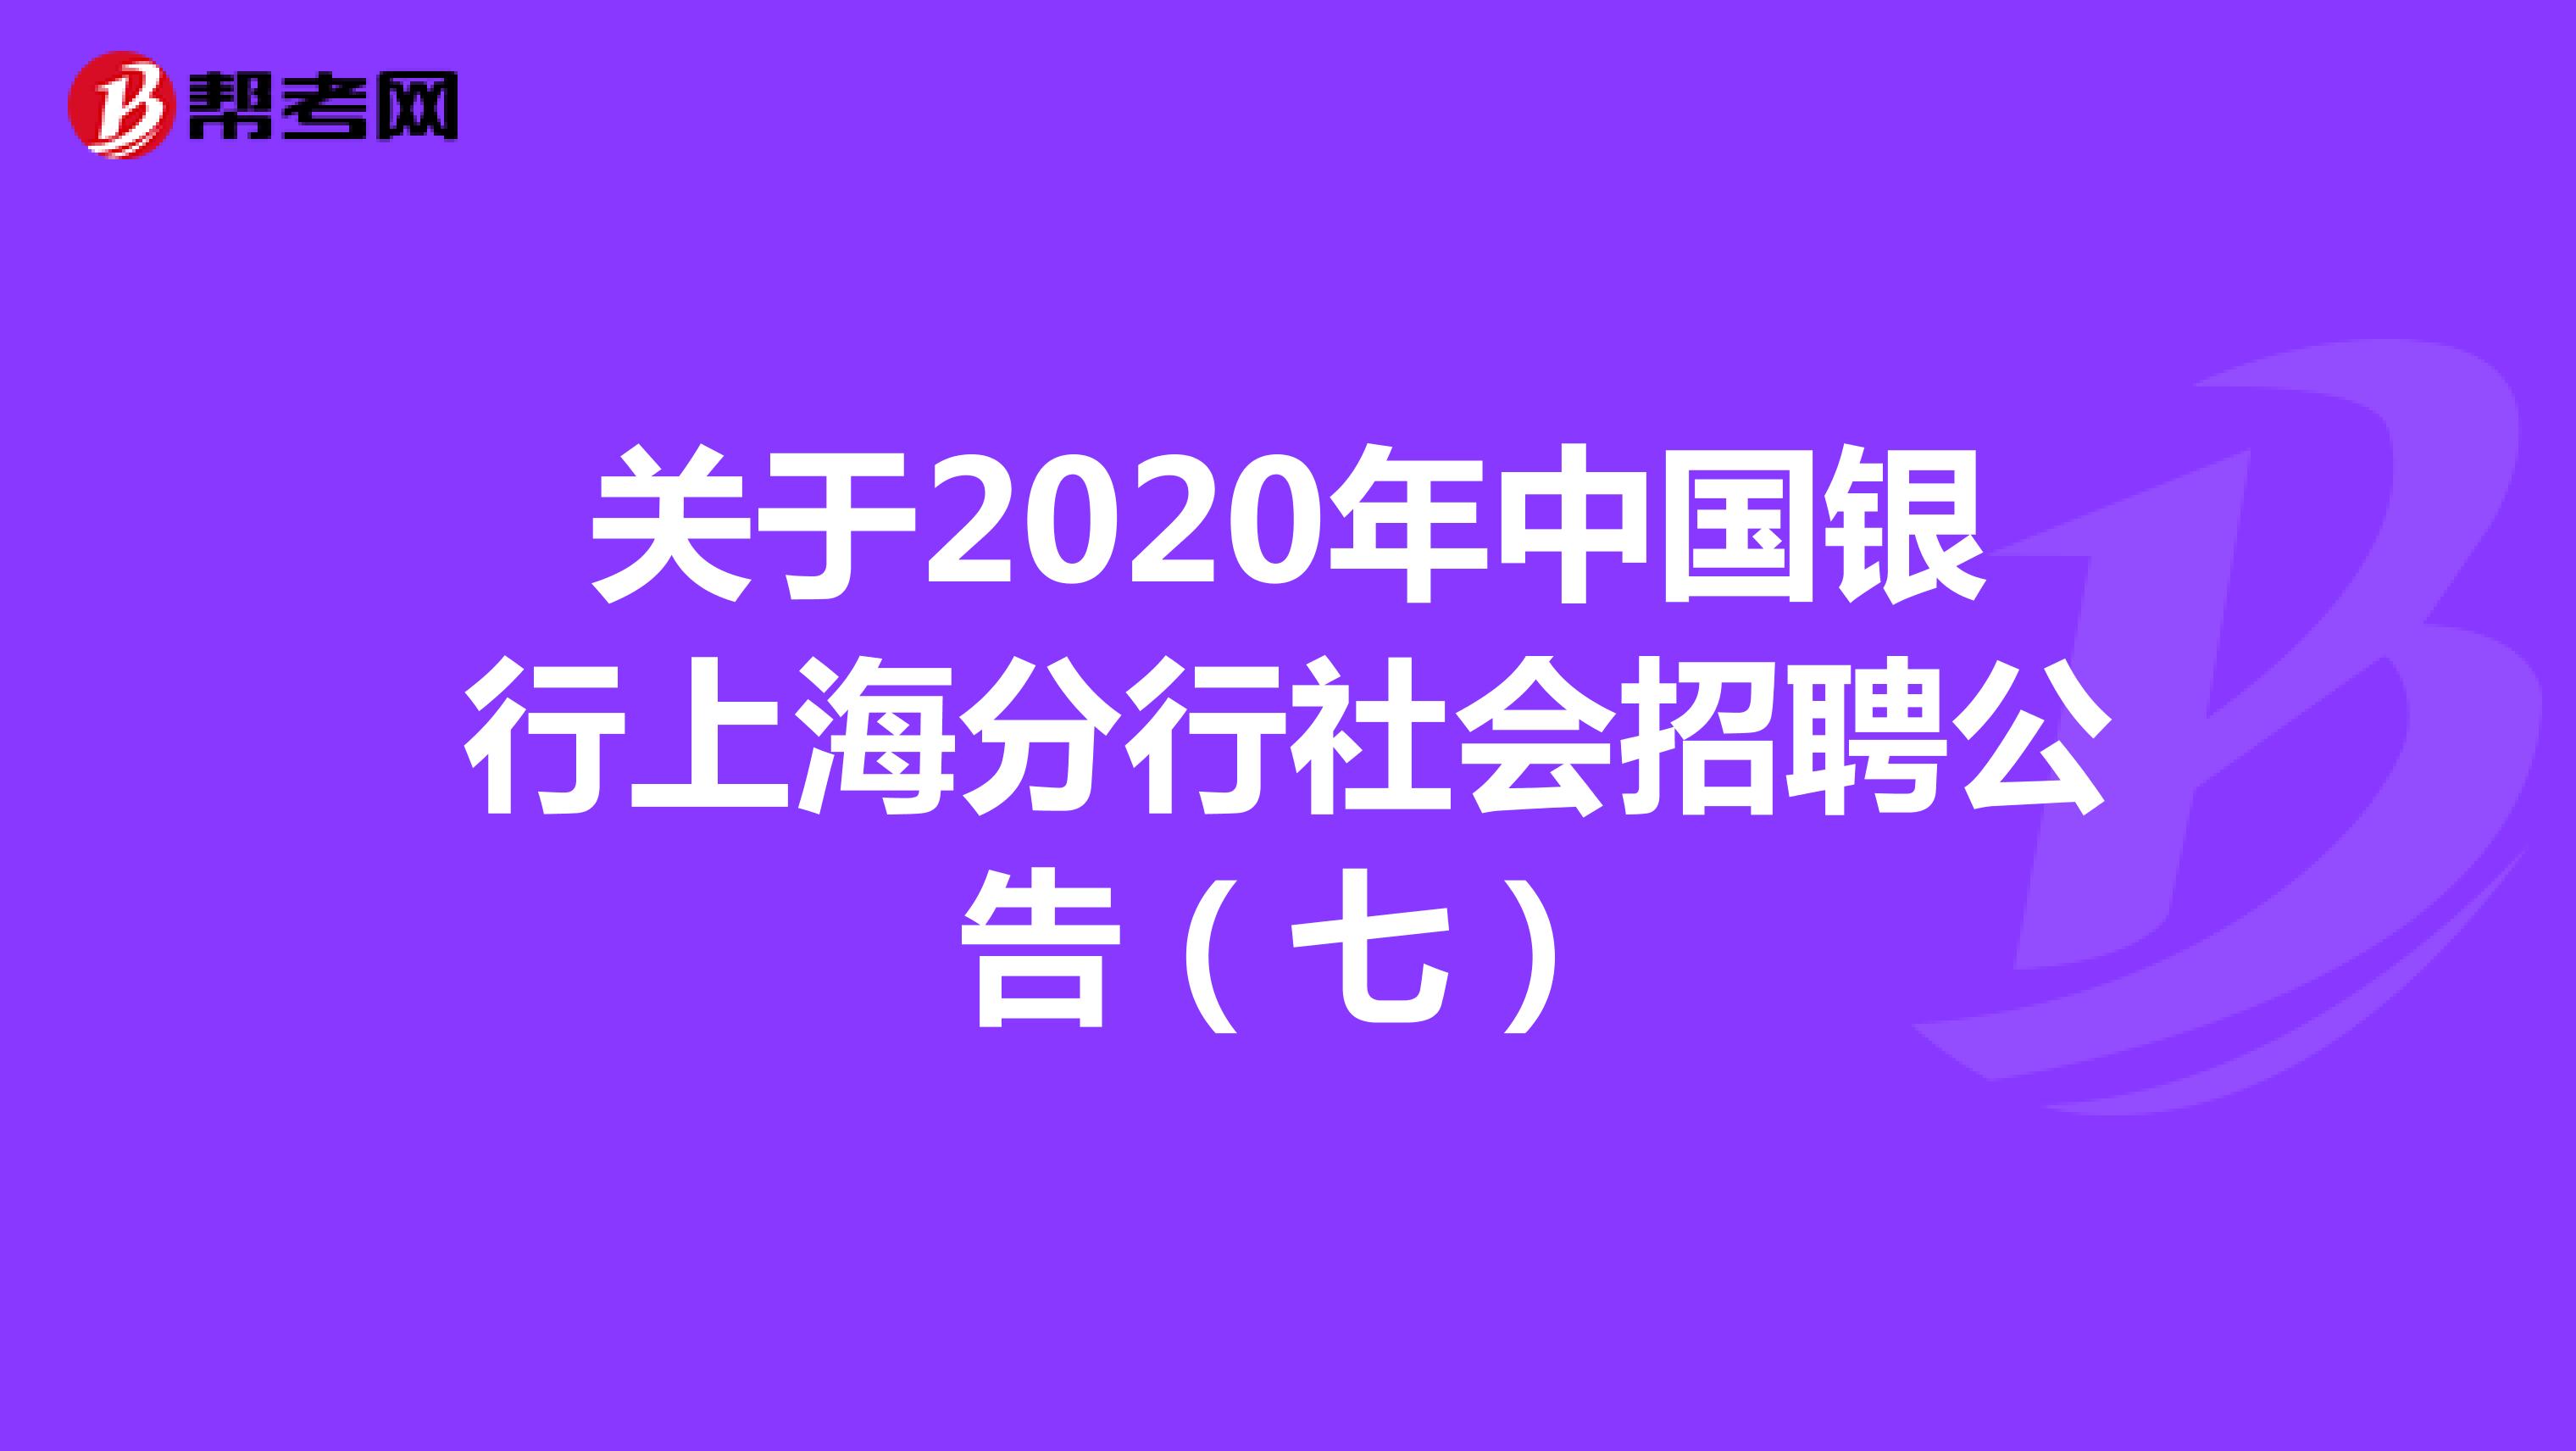 关于2020年中国银行上海分行社会招聘公告（七）